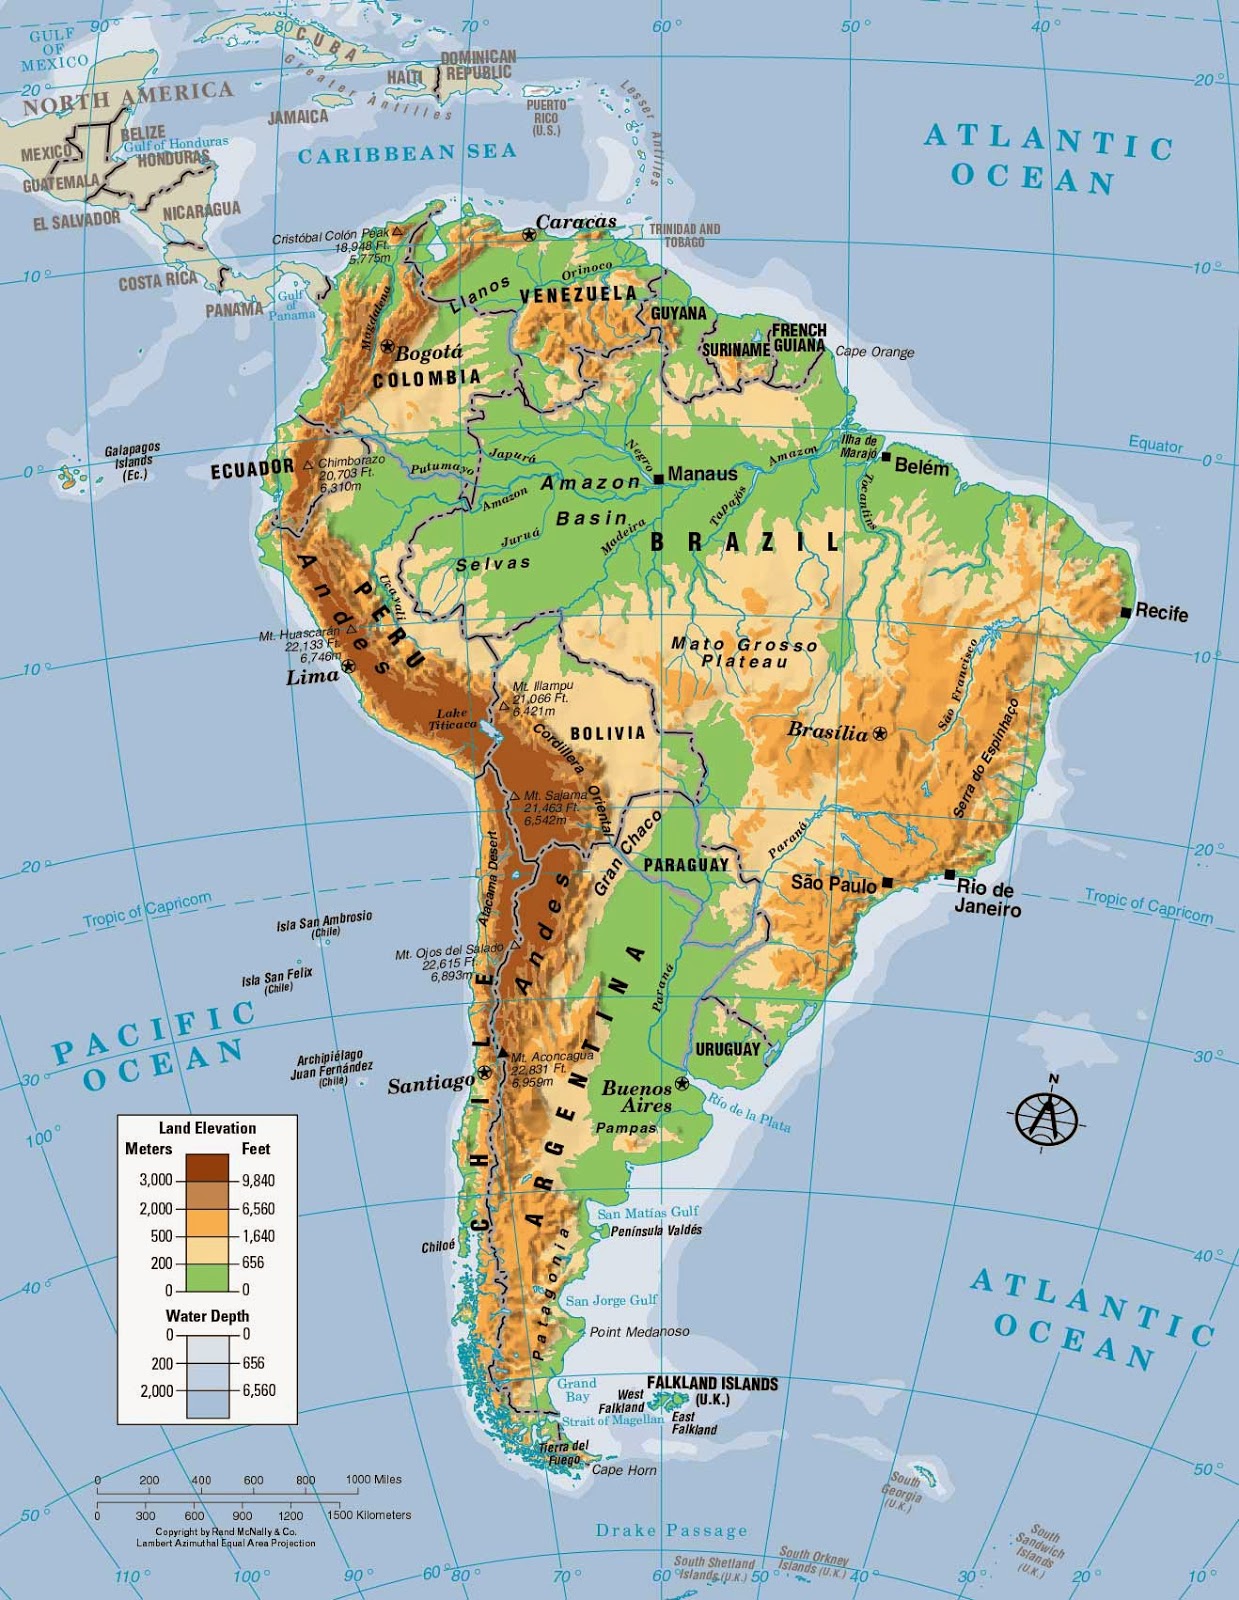 Mapa de America del Sur - Mapa Físico, Geográfico, Político, turístico